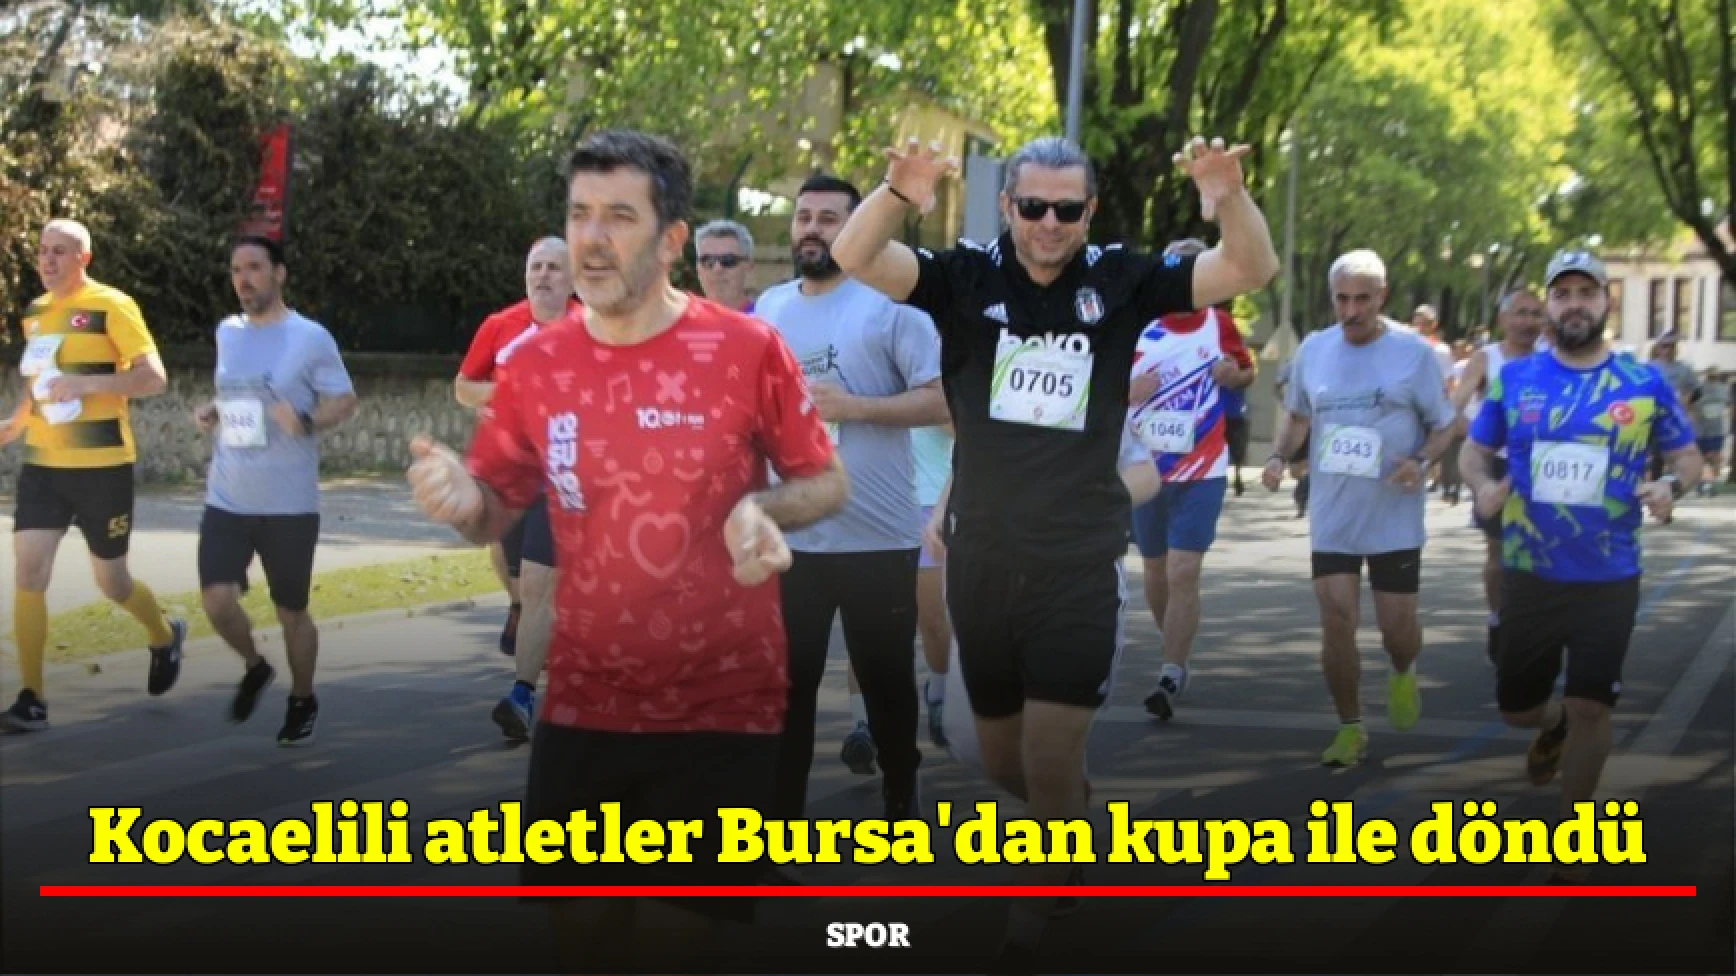 Kocaelili atletler Bursa'dan kupa ile döndü